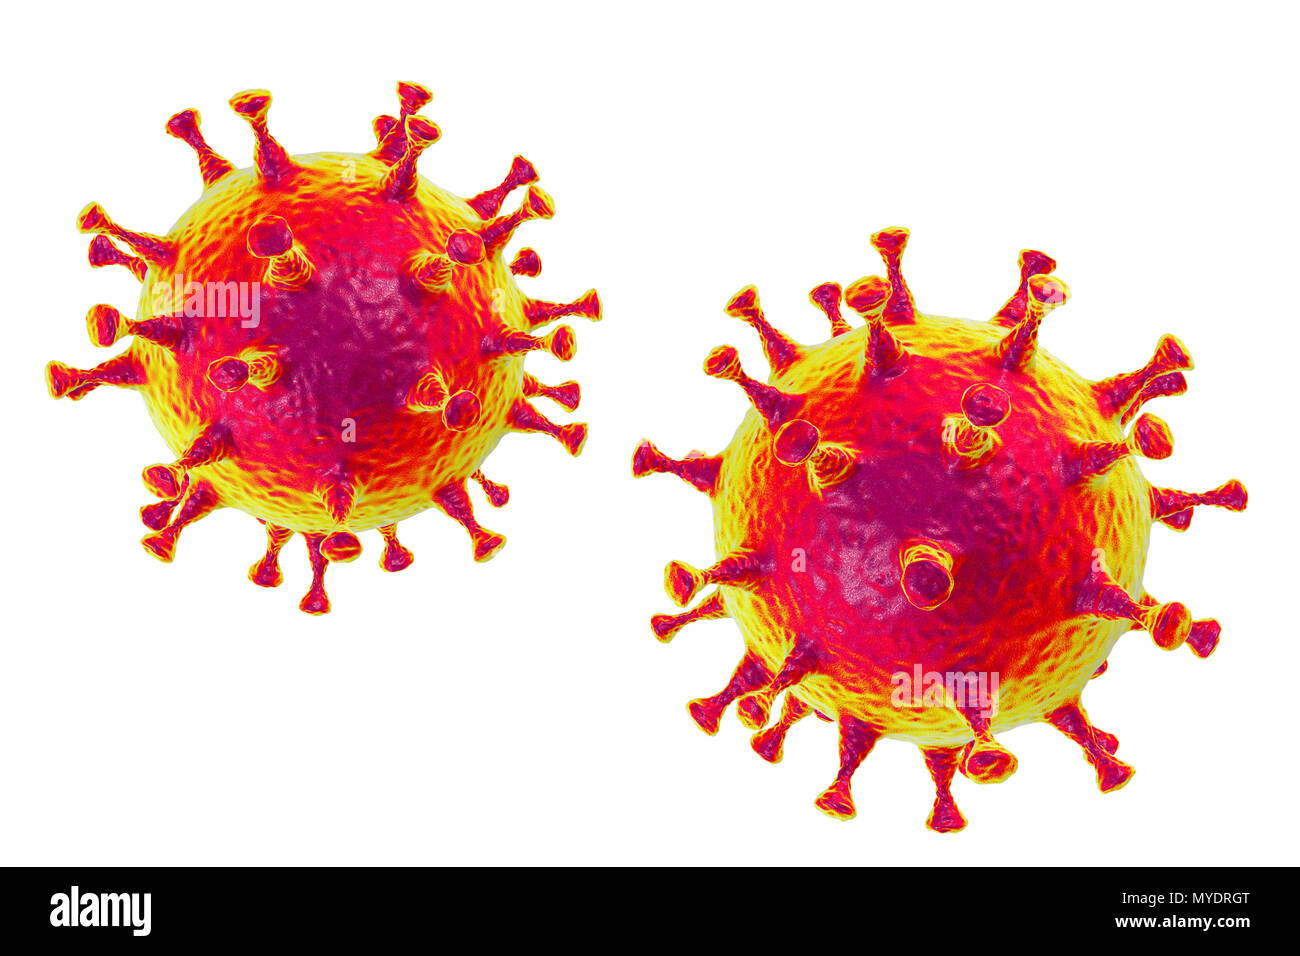 Coronavirus du Syndrome respiratoire du Moyen-Orient (MERS-CoV) Particules (ordinateur), virions illustration. Anciennement connu sous le nouveau coronavirus, mers a été identifié pour la première fois en Arabie saoudite en 2012. La plupart des personnes infectées par MERS développer une maladie respiratoire aiguë sévère avec des symptômes de fièvre, de toux et l'essoufflement. Banque D'Images